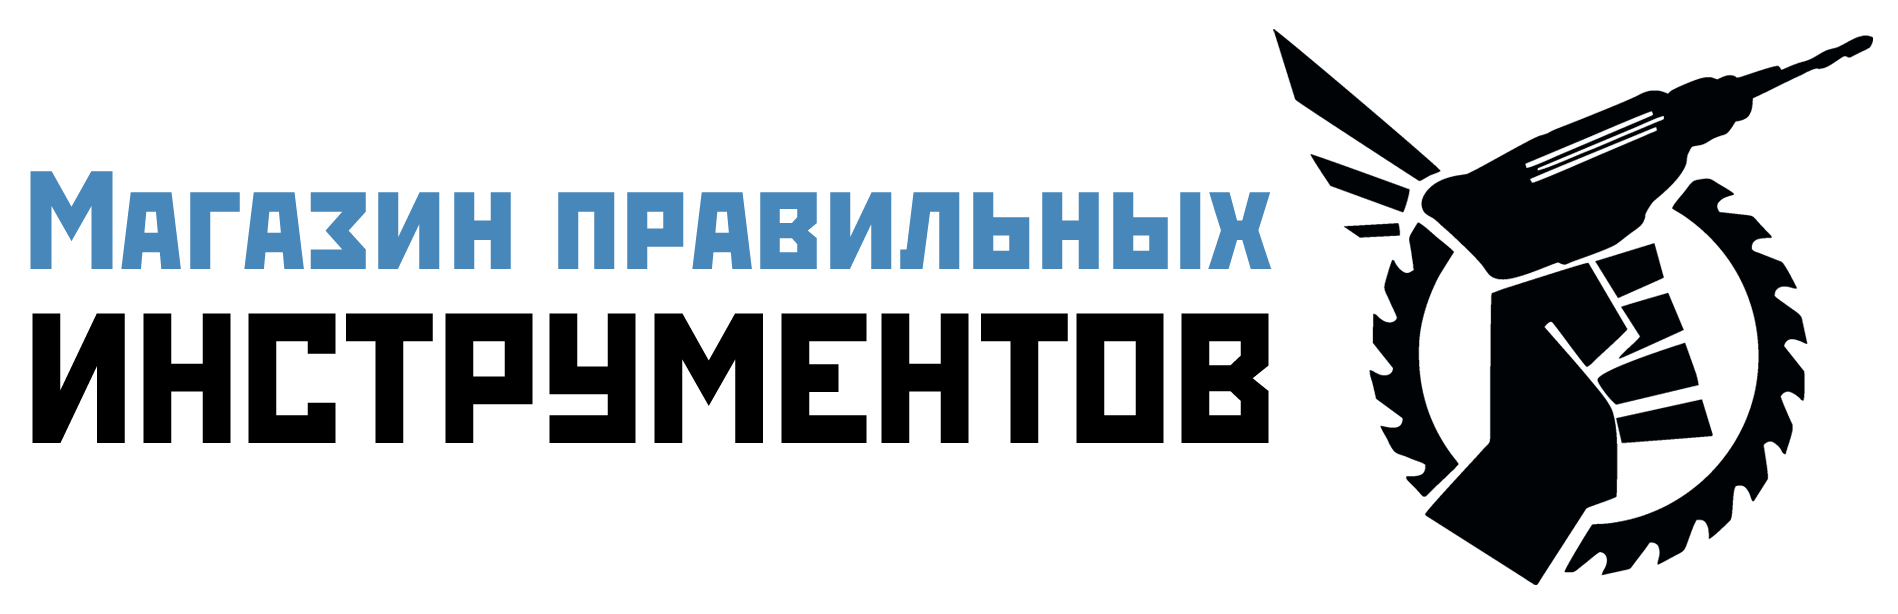 Магазин станков и электроинструмента INVOZ.RU - Логотип